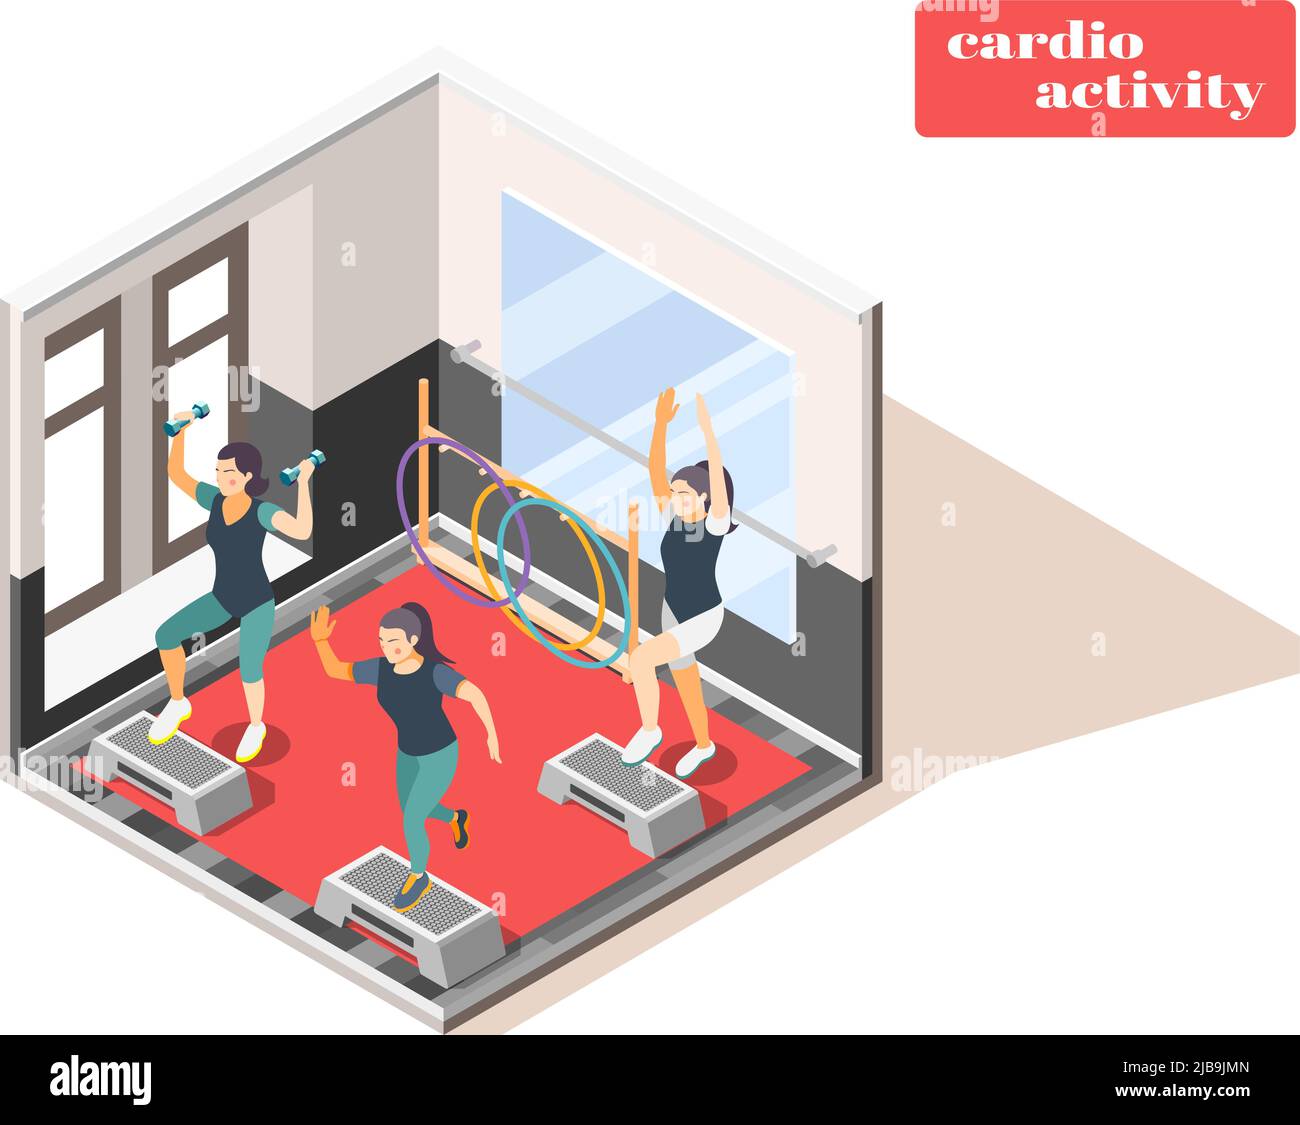 Centre de fitness intérieur composition isométrique avec exercices cardio et haltères illustration vectorielle d'exercice intérieur Illustration de Vecteur